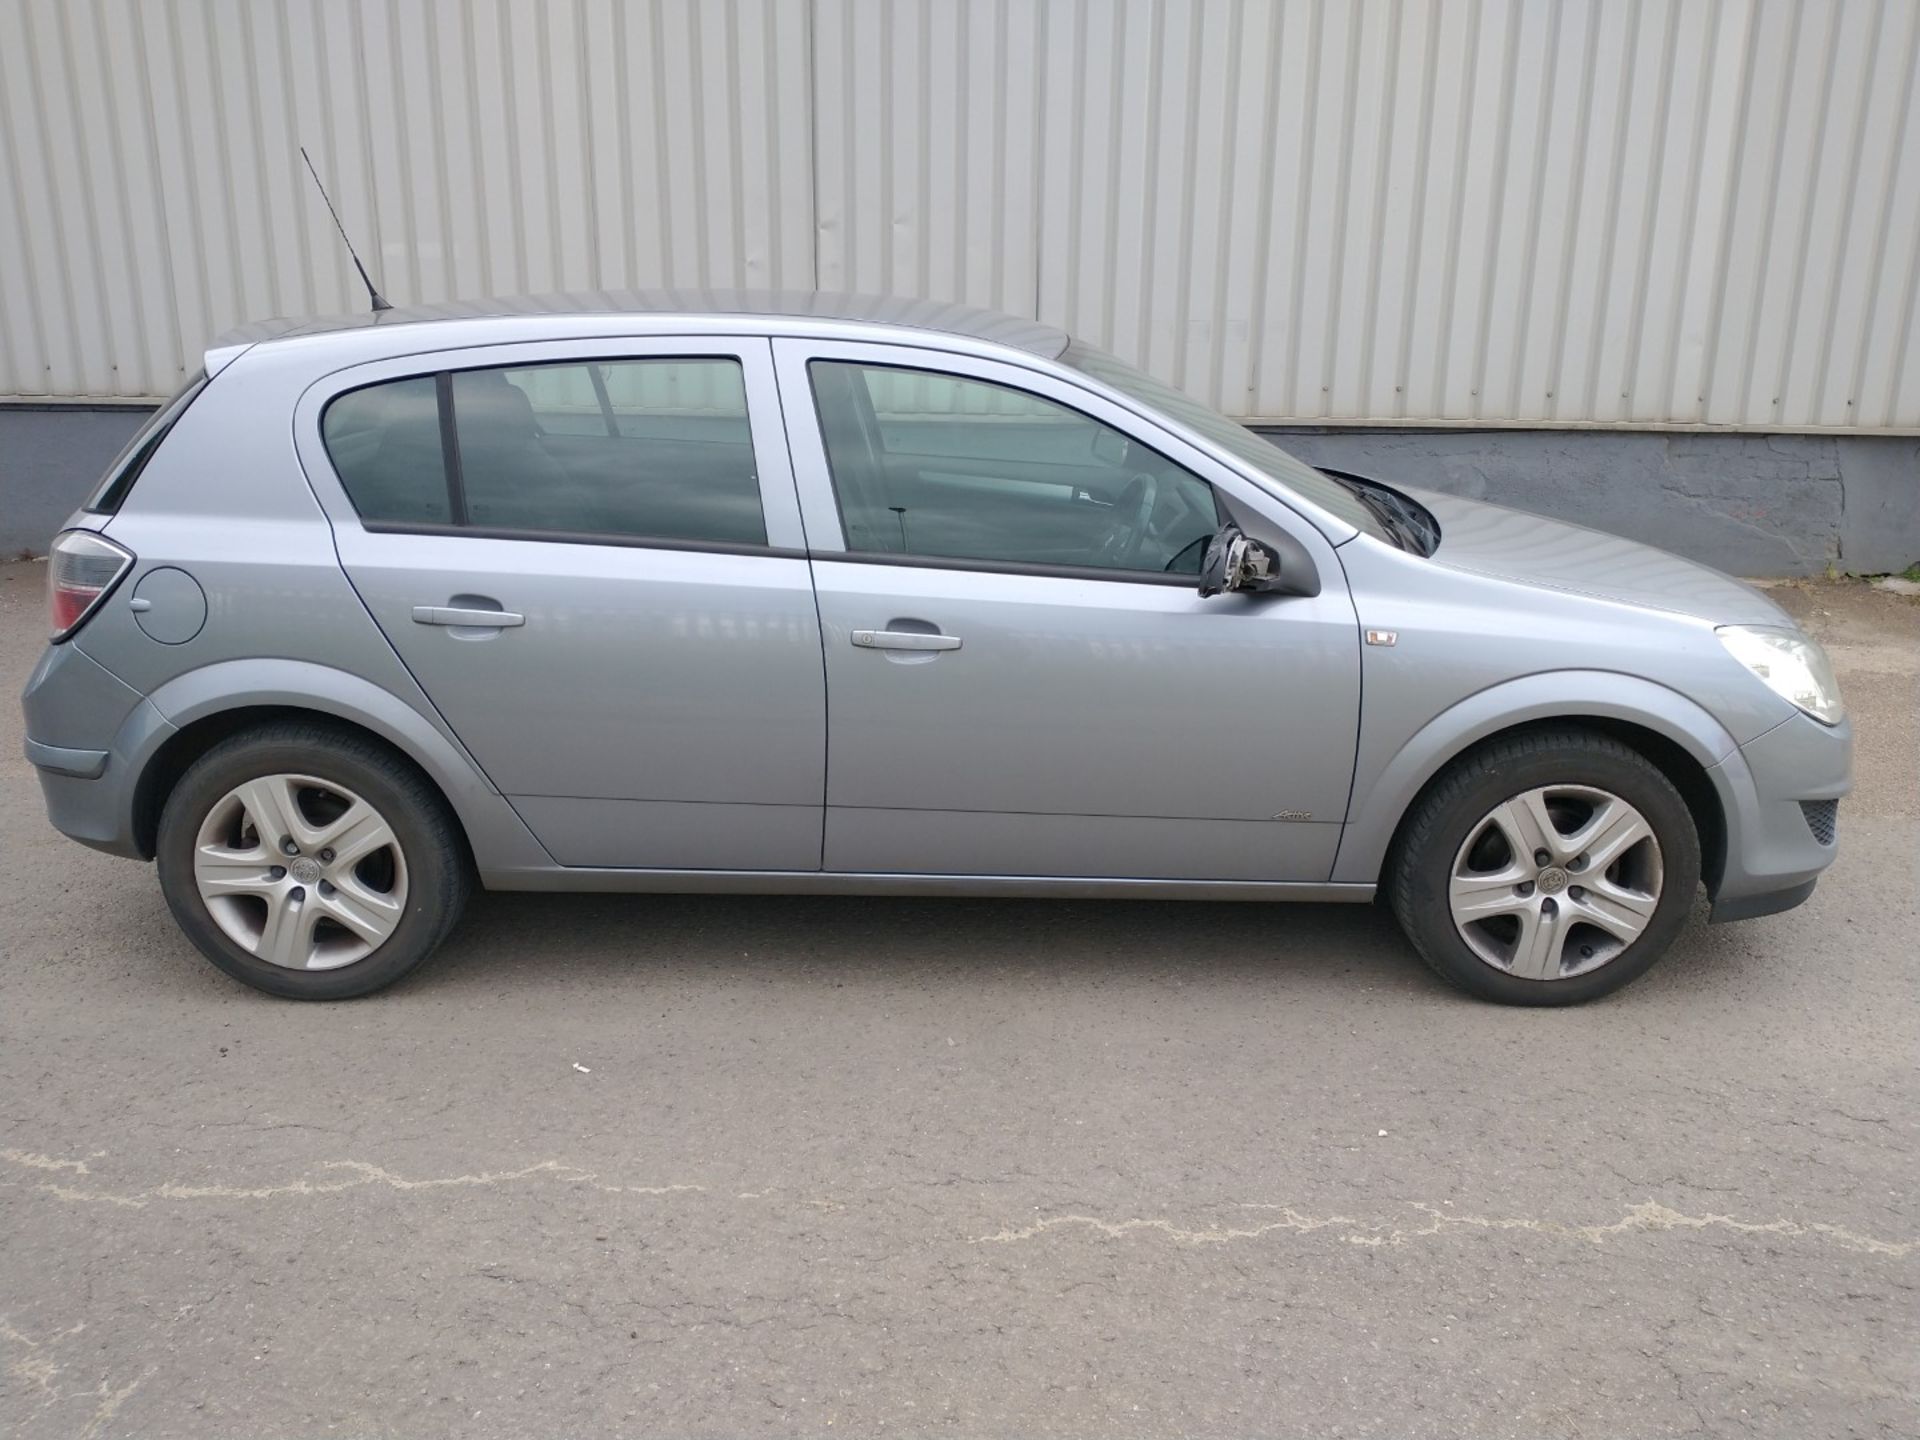 2010 Vauxhall Astra Active 5dr Hatchback 1.4 Petrol - CL505 - Ref: VVS0014 - NO VAT ON THE HAMMER - - Image 16 of 18